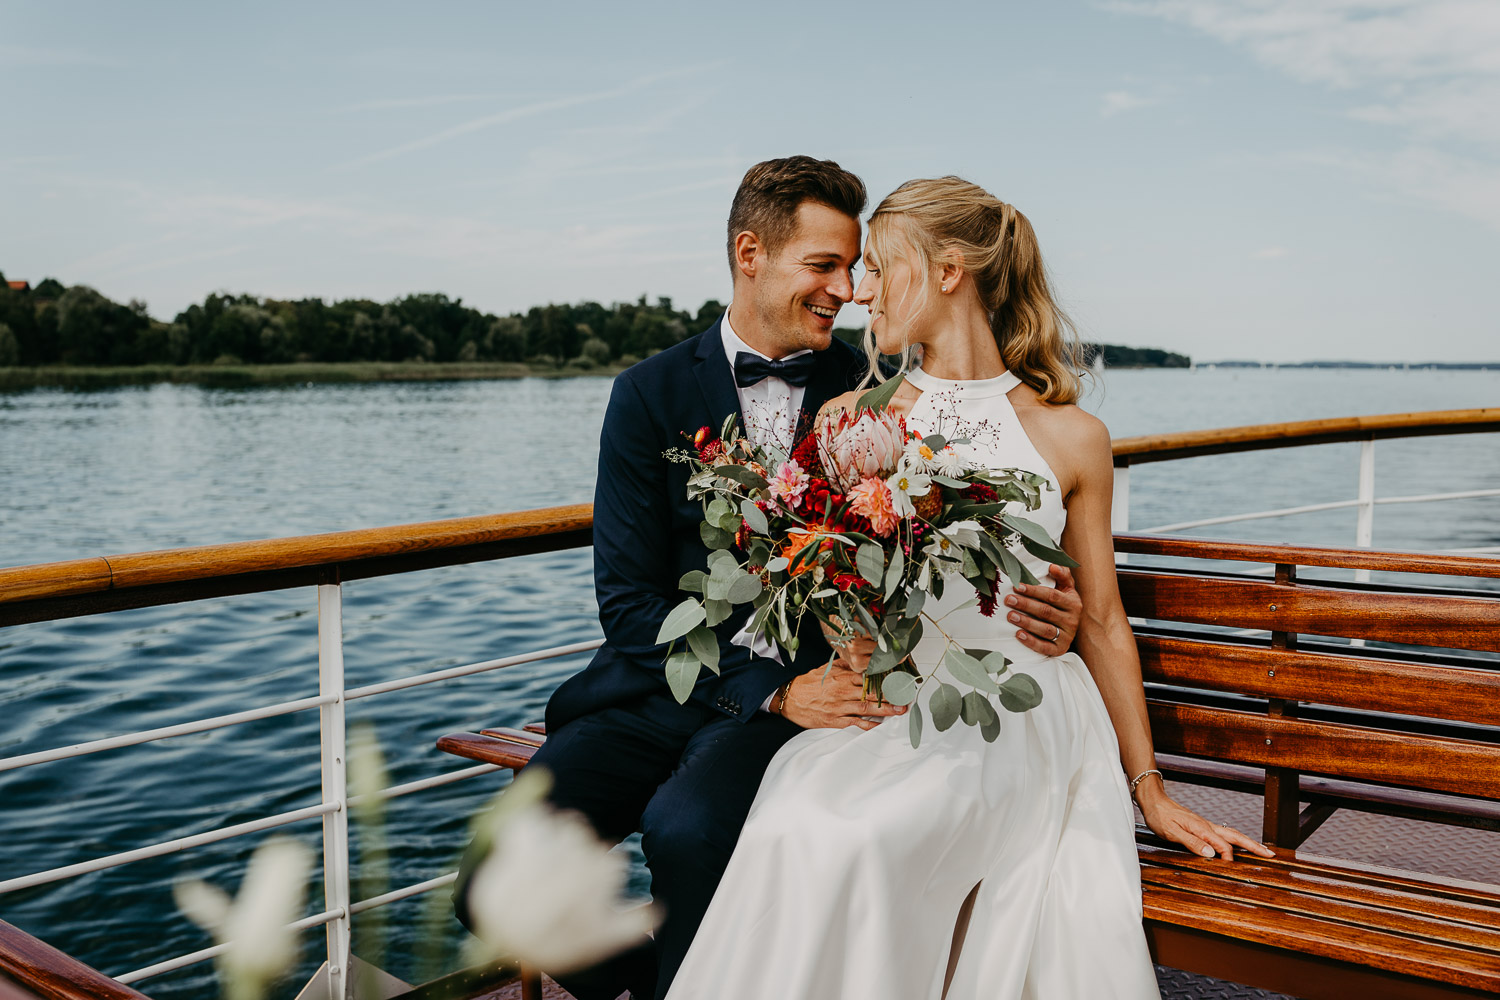 Traumhafte Hochzeit im Chiemgauhof am Chiemsee und freie Trauung auf dem Dampfer